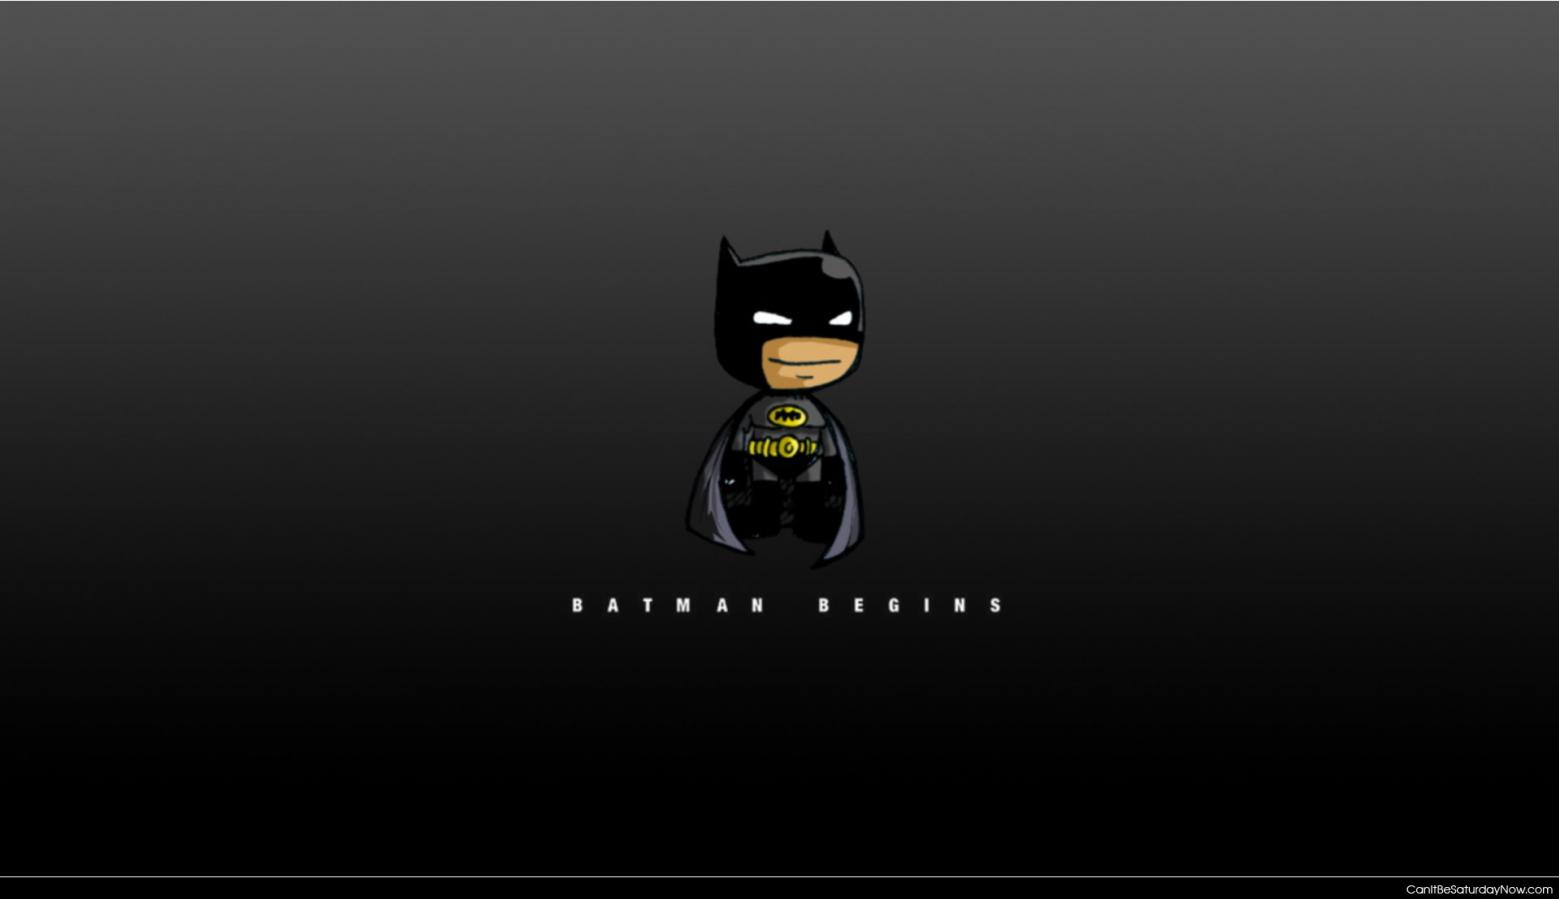 Batman begins - batman begins wallpaper